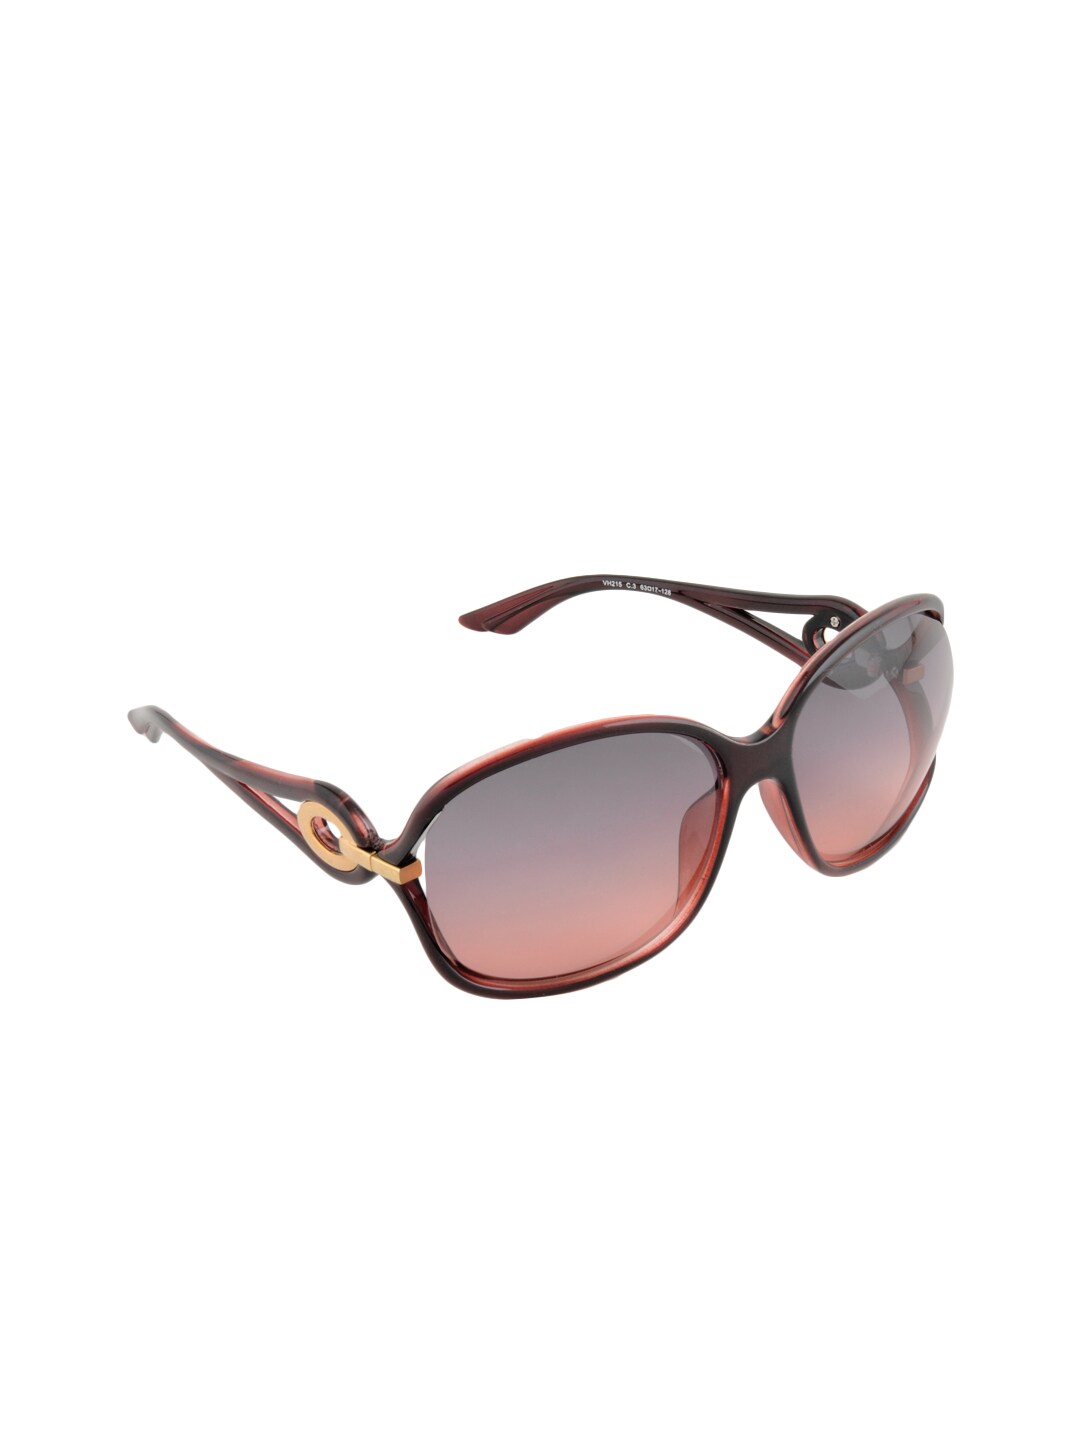 Van Heusen Women Oversized Sunglasses VH215-C3